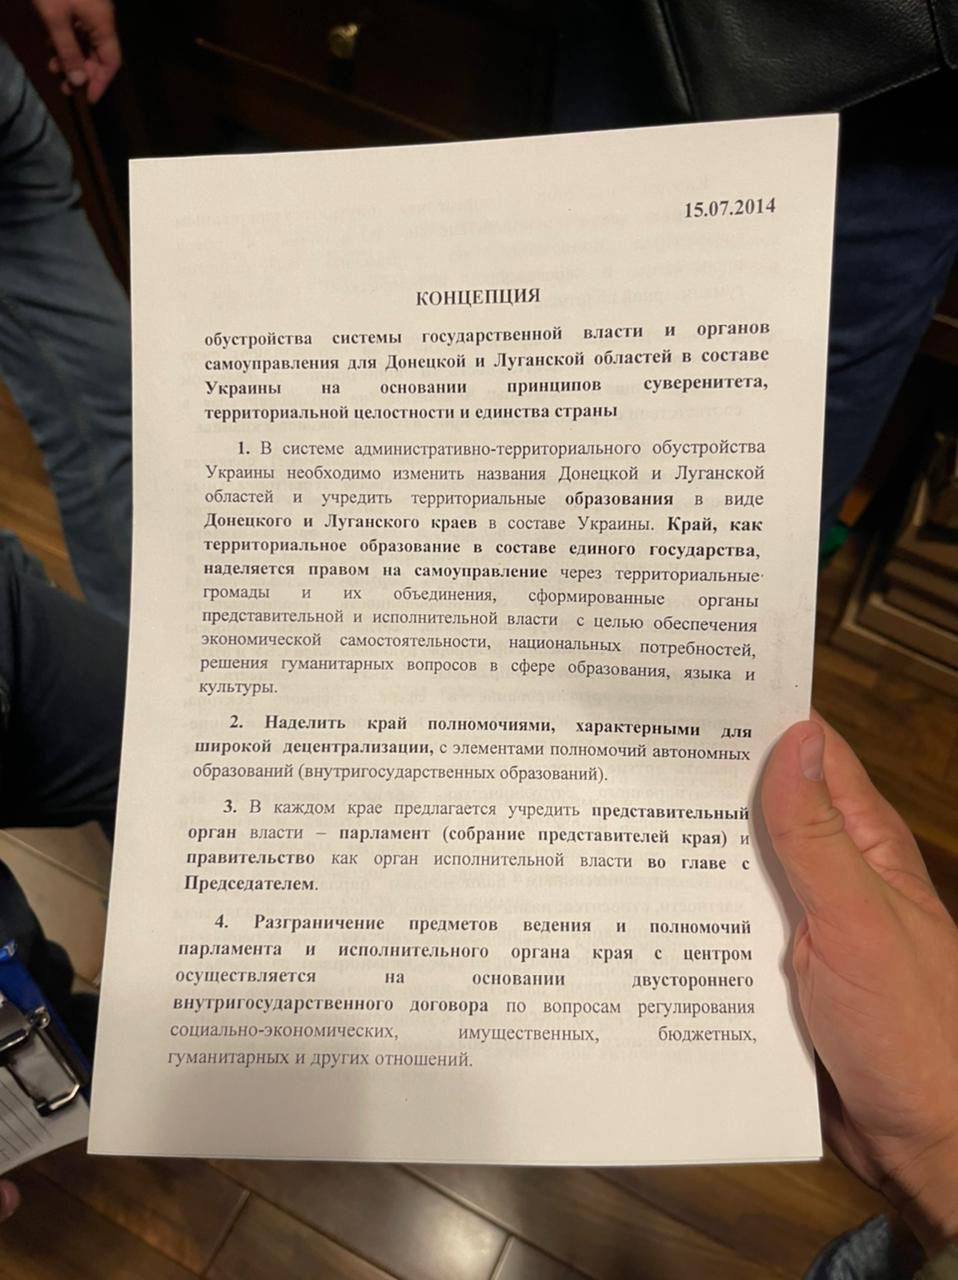 Також під час обшуків у Шуфрича співробітники СБУ знайшли документ із схемою автономії для Донецької та Луганської областей